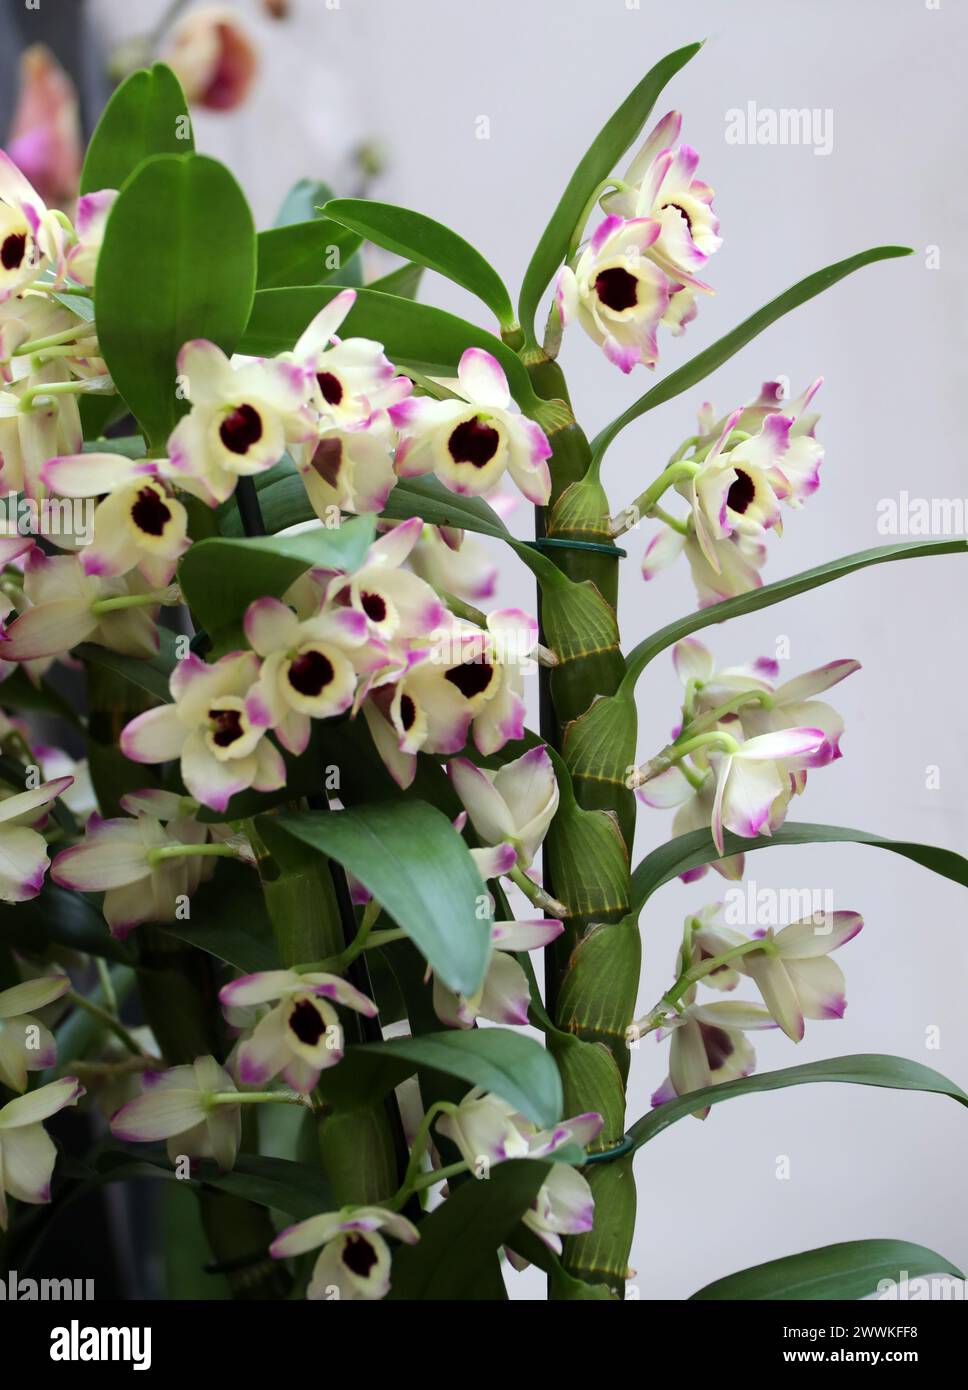 Orchidee, Dendrobium Brilliant Smile, Dendrobiinae, Orchidaceae. Dendrobium ist eine Gattung von meist epiphytischen und lithophytischen Orchideen. Stockfoto